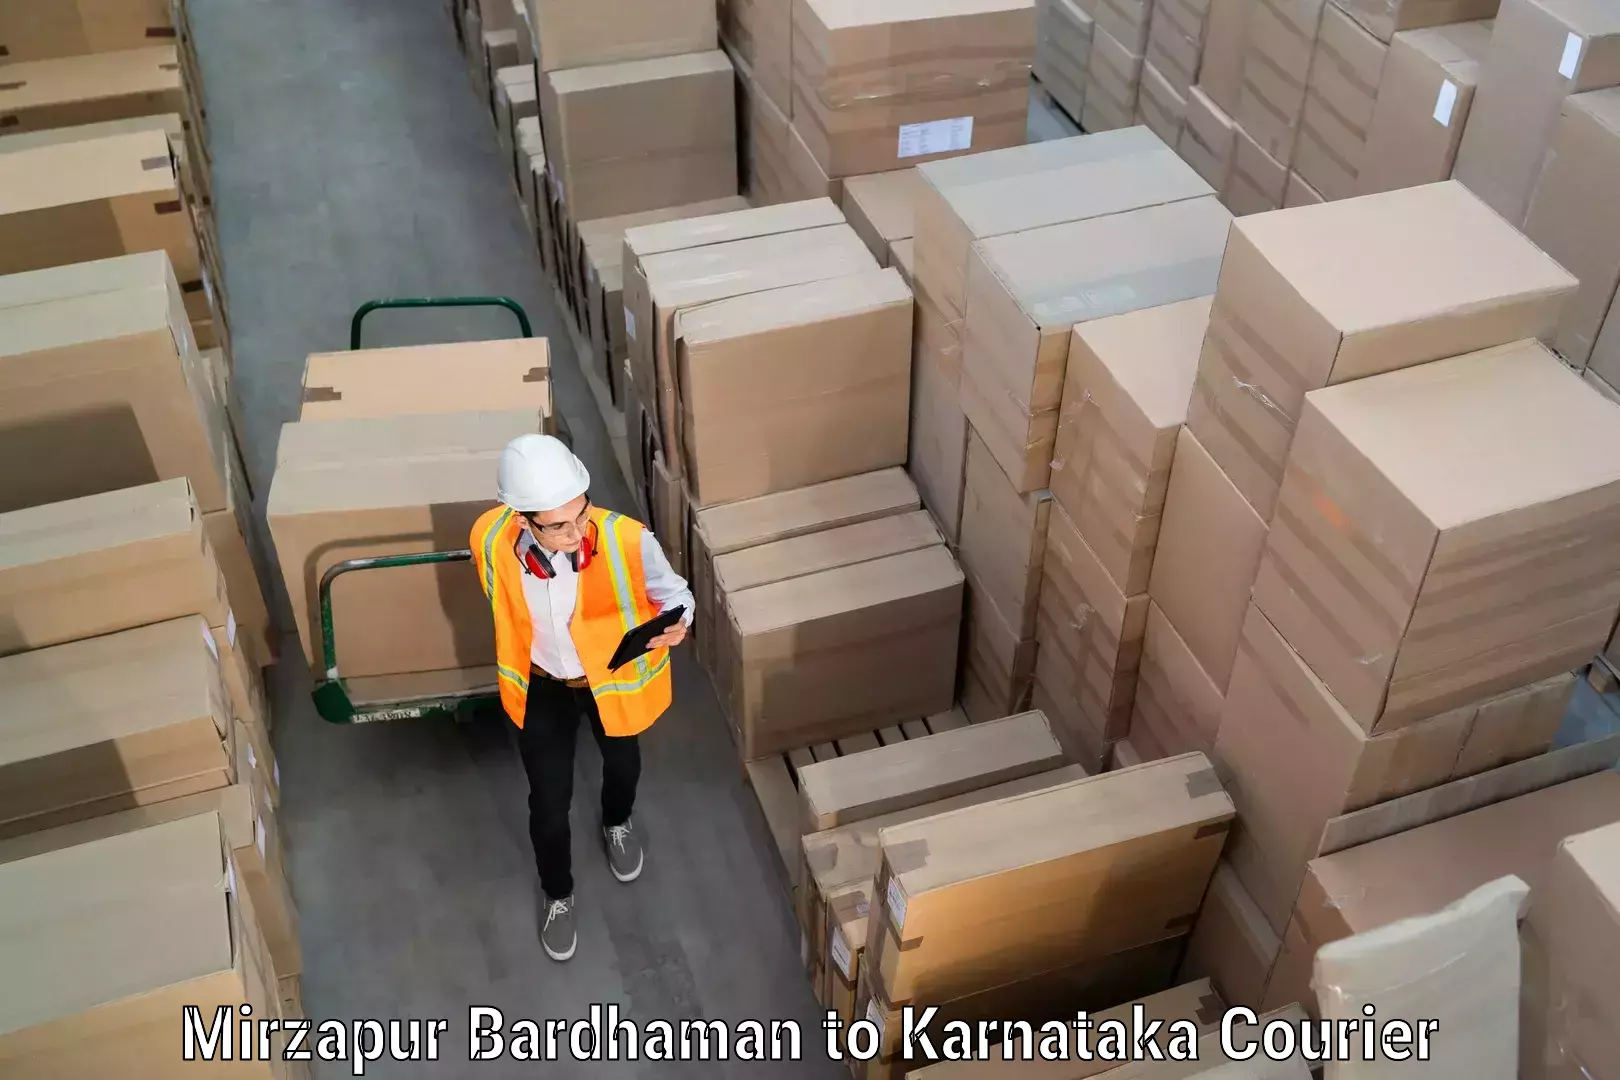 Moving and handling services Mirzapur Bardhaman to Karnataka